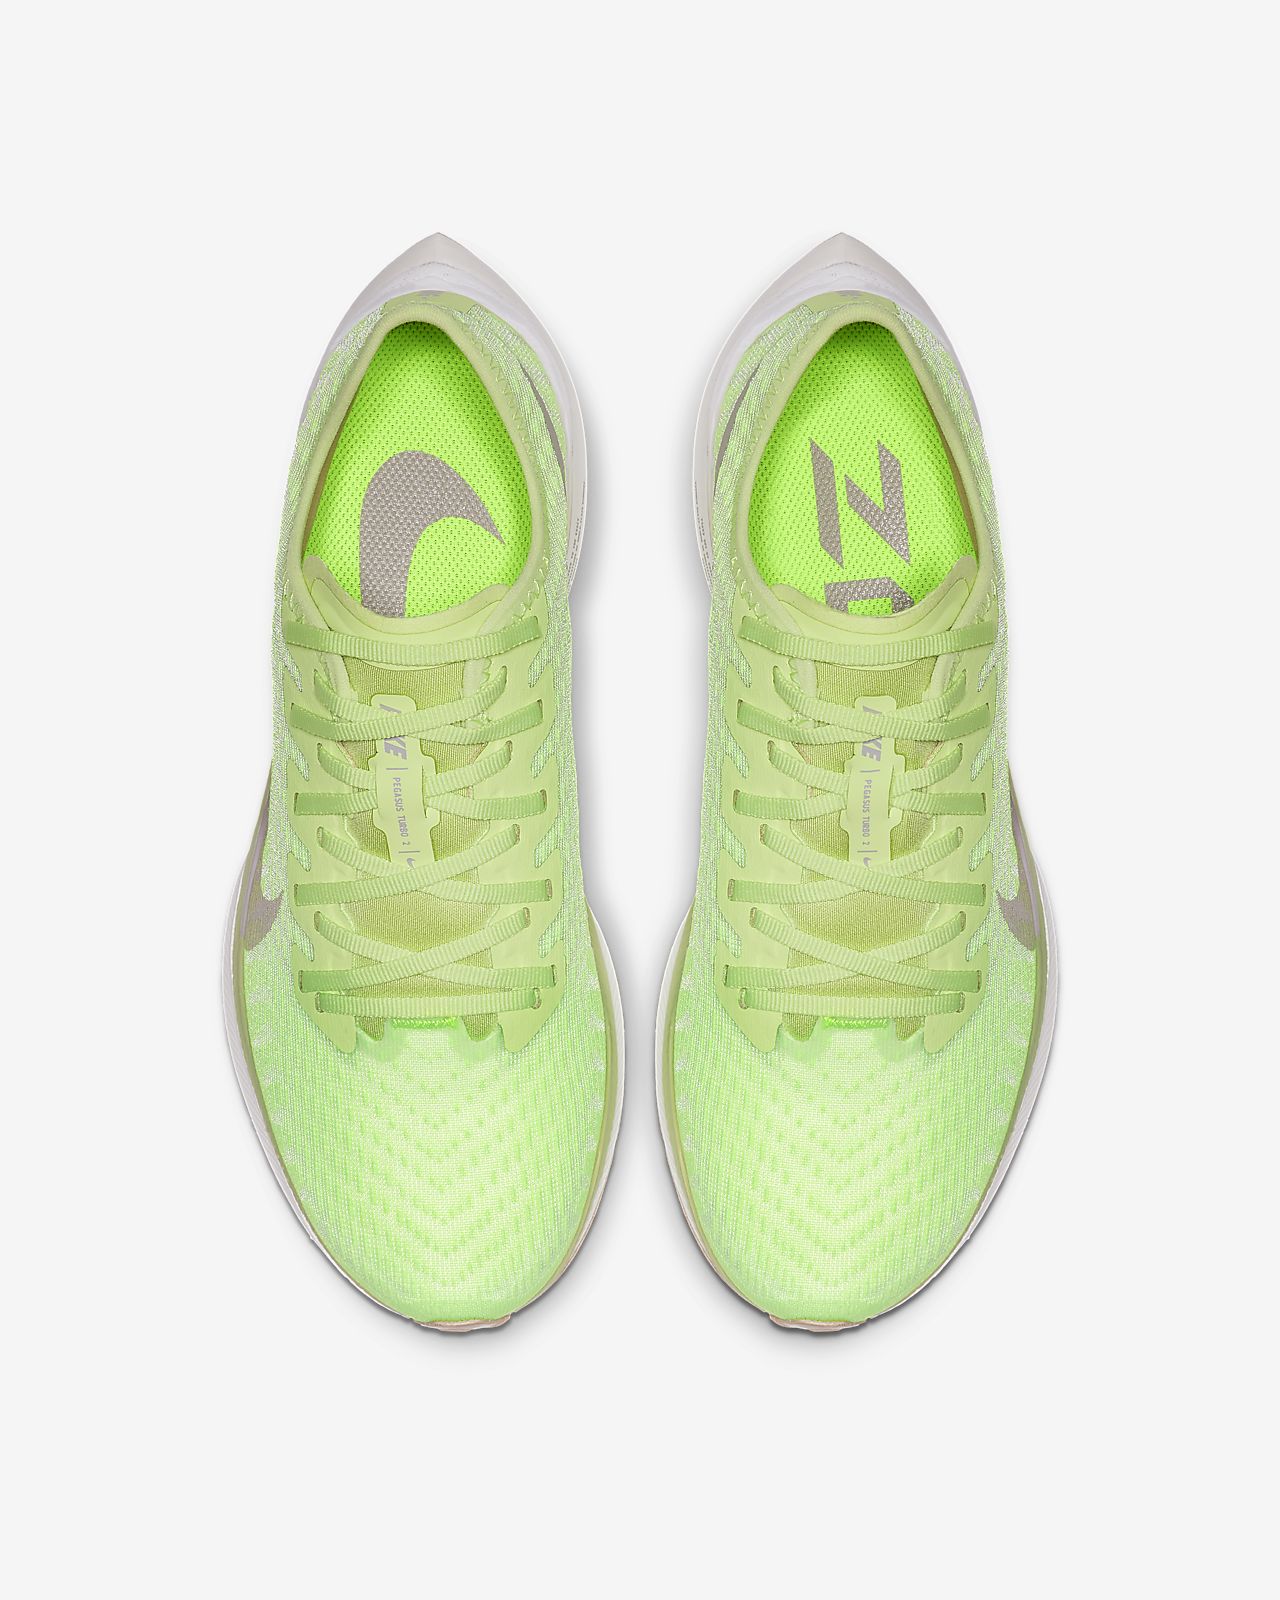 green nike shoes womens